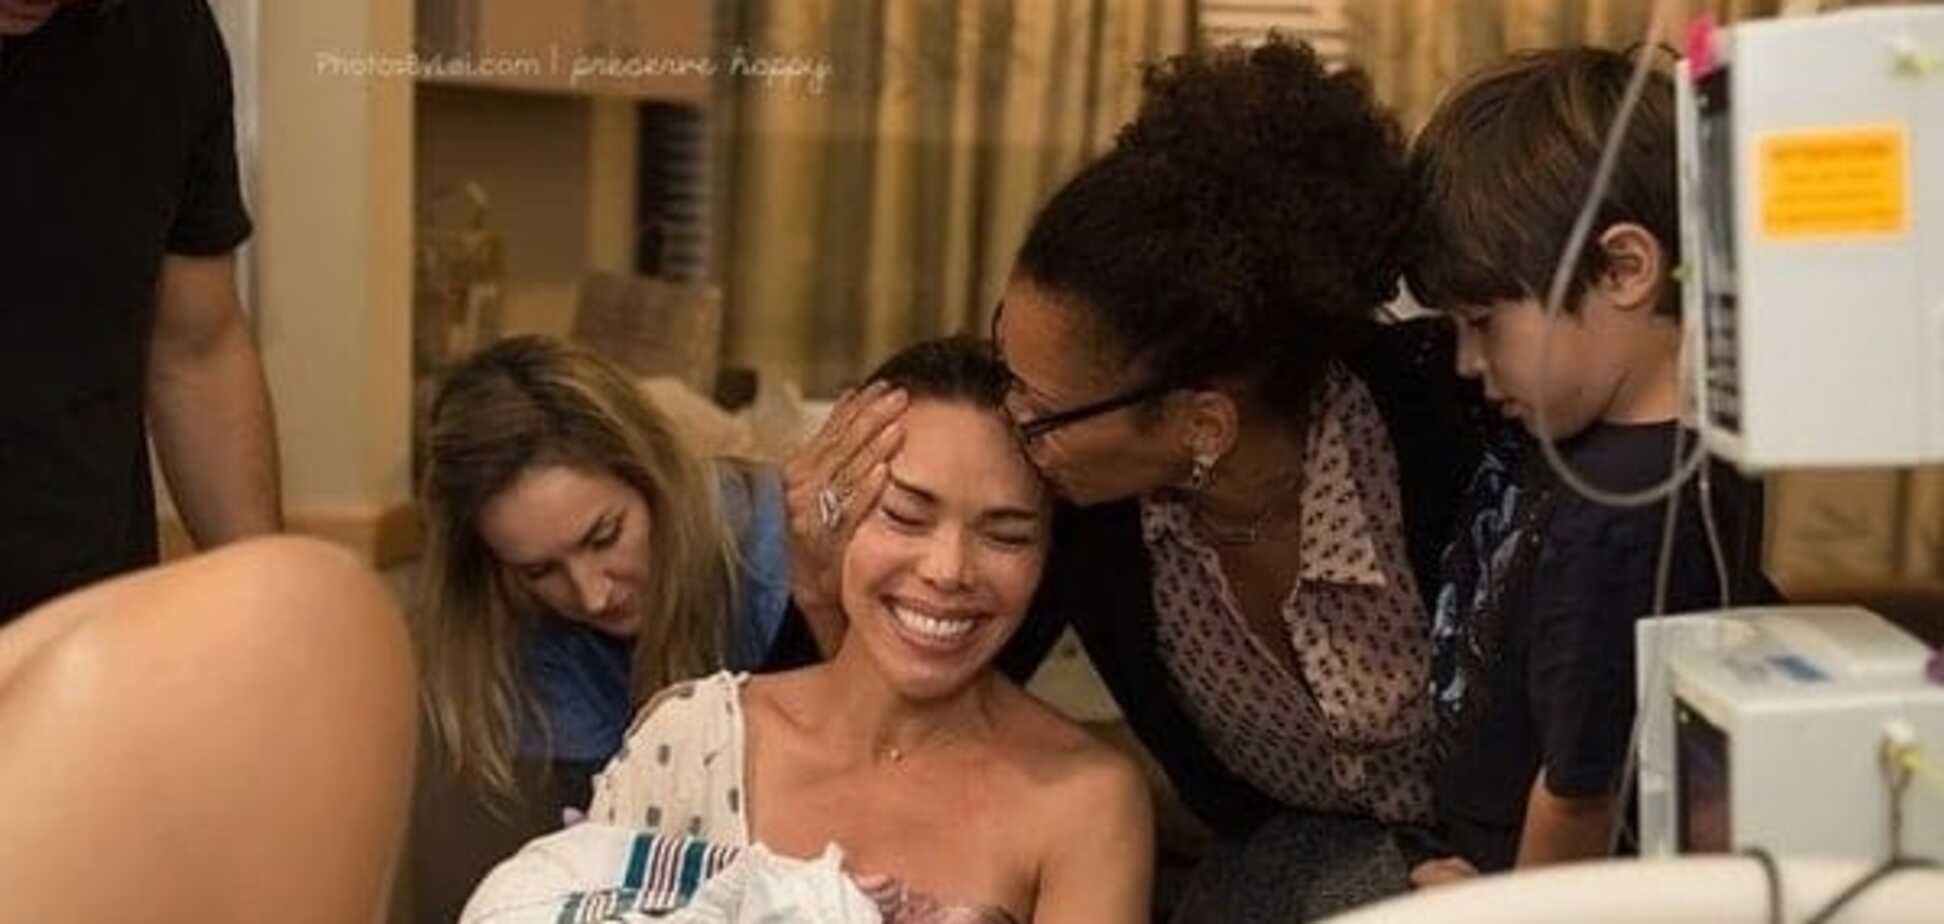 Уникальные фото: мама встречает своего рожденного от суррогатной матери малыша